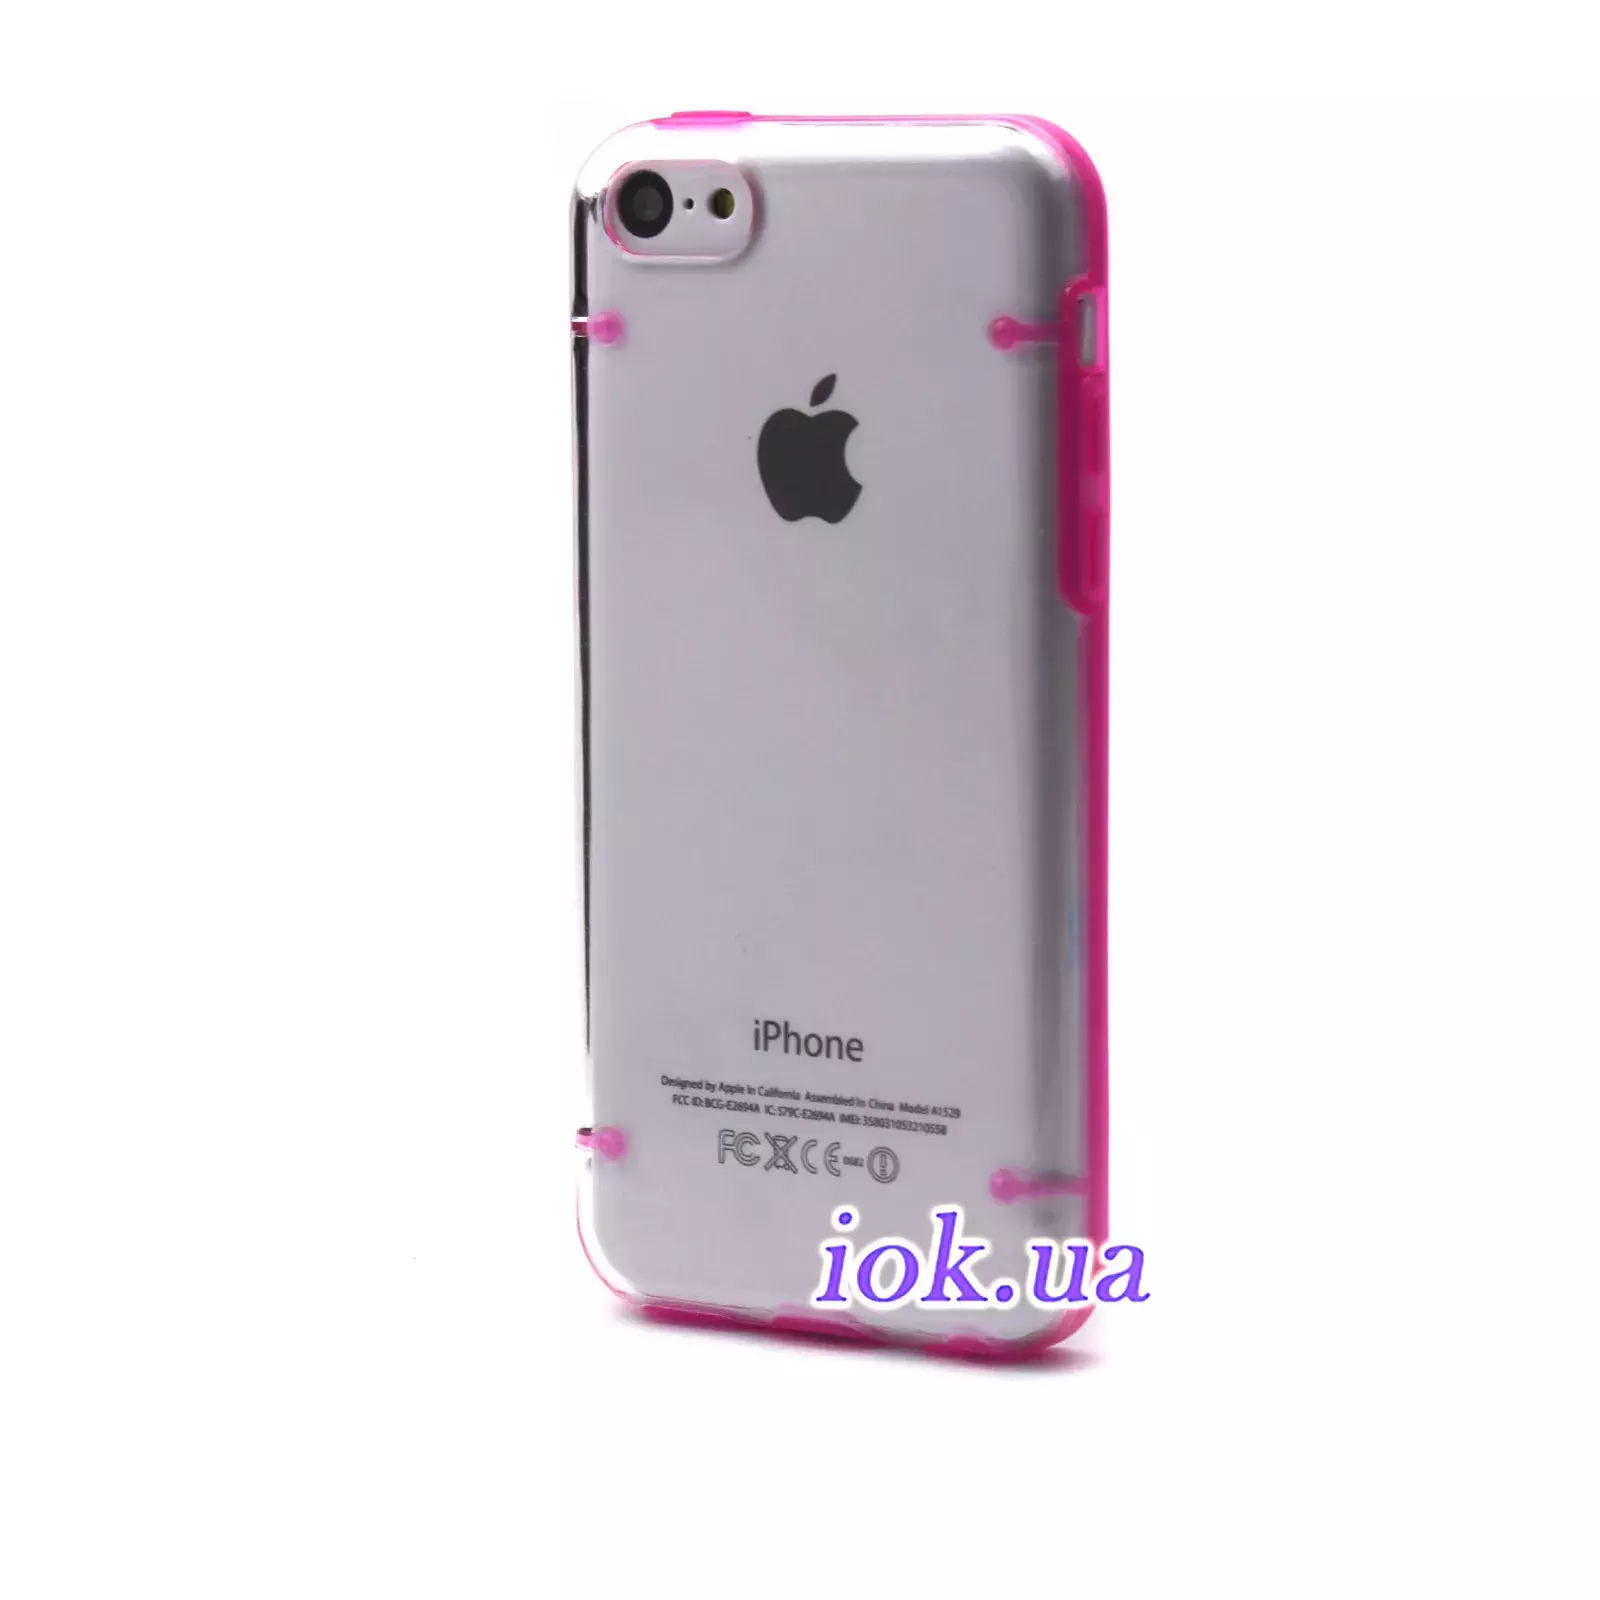 Прозрачный силиконовый для iPhone 5C, розовый